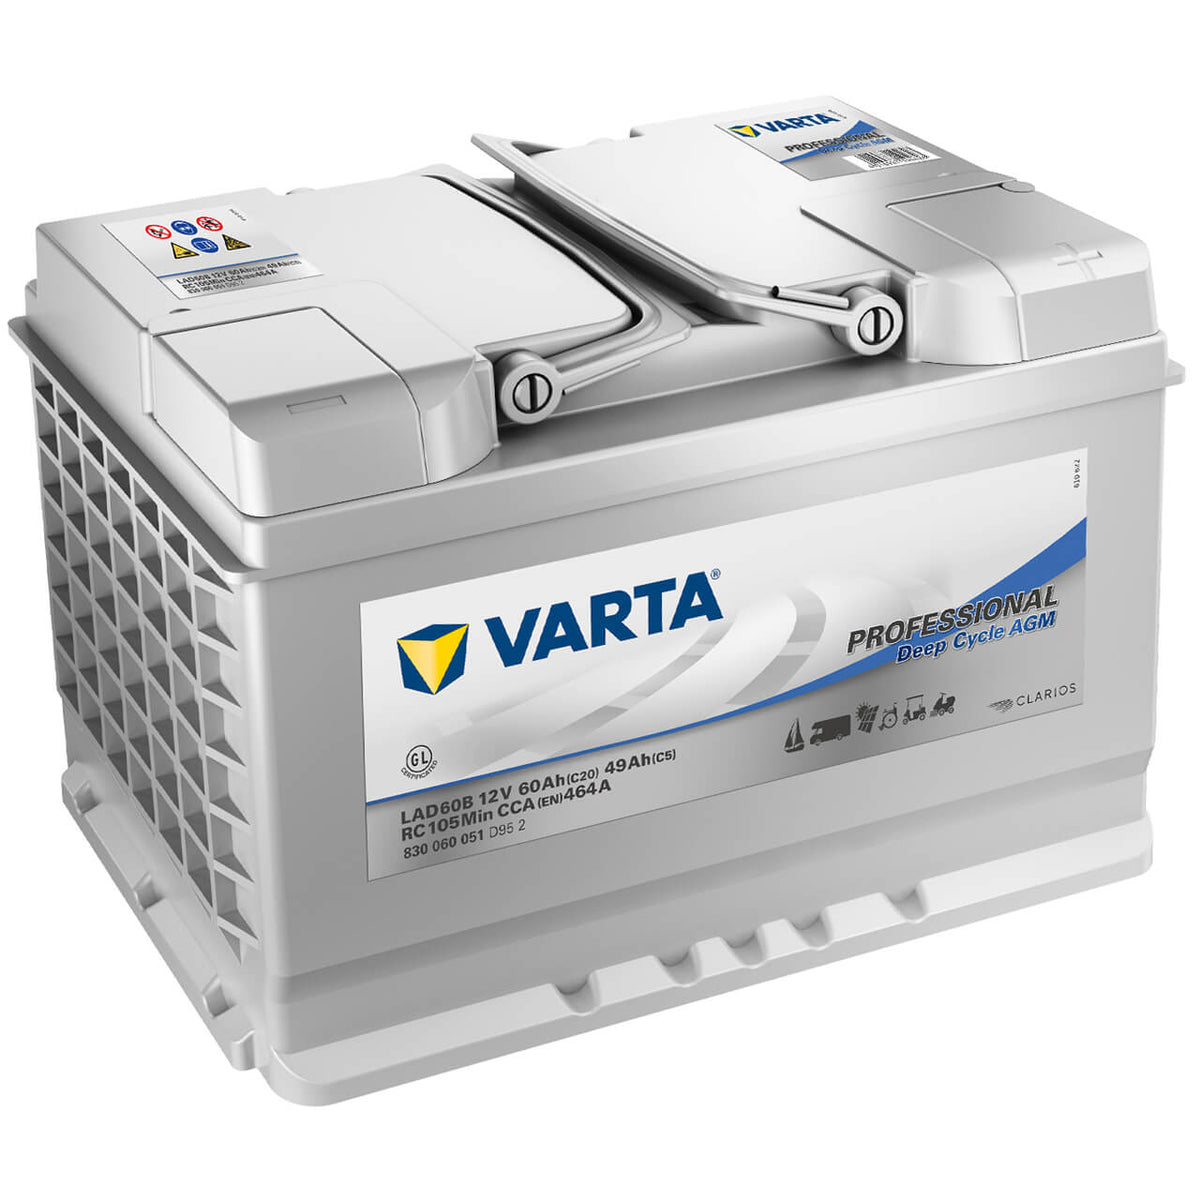 Varta LFS60. Bootsbatterie Varta 60Ah 12V